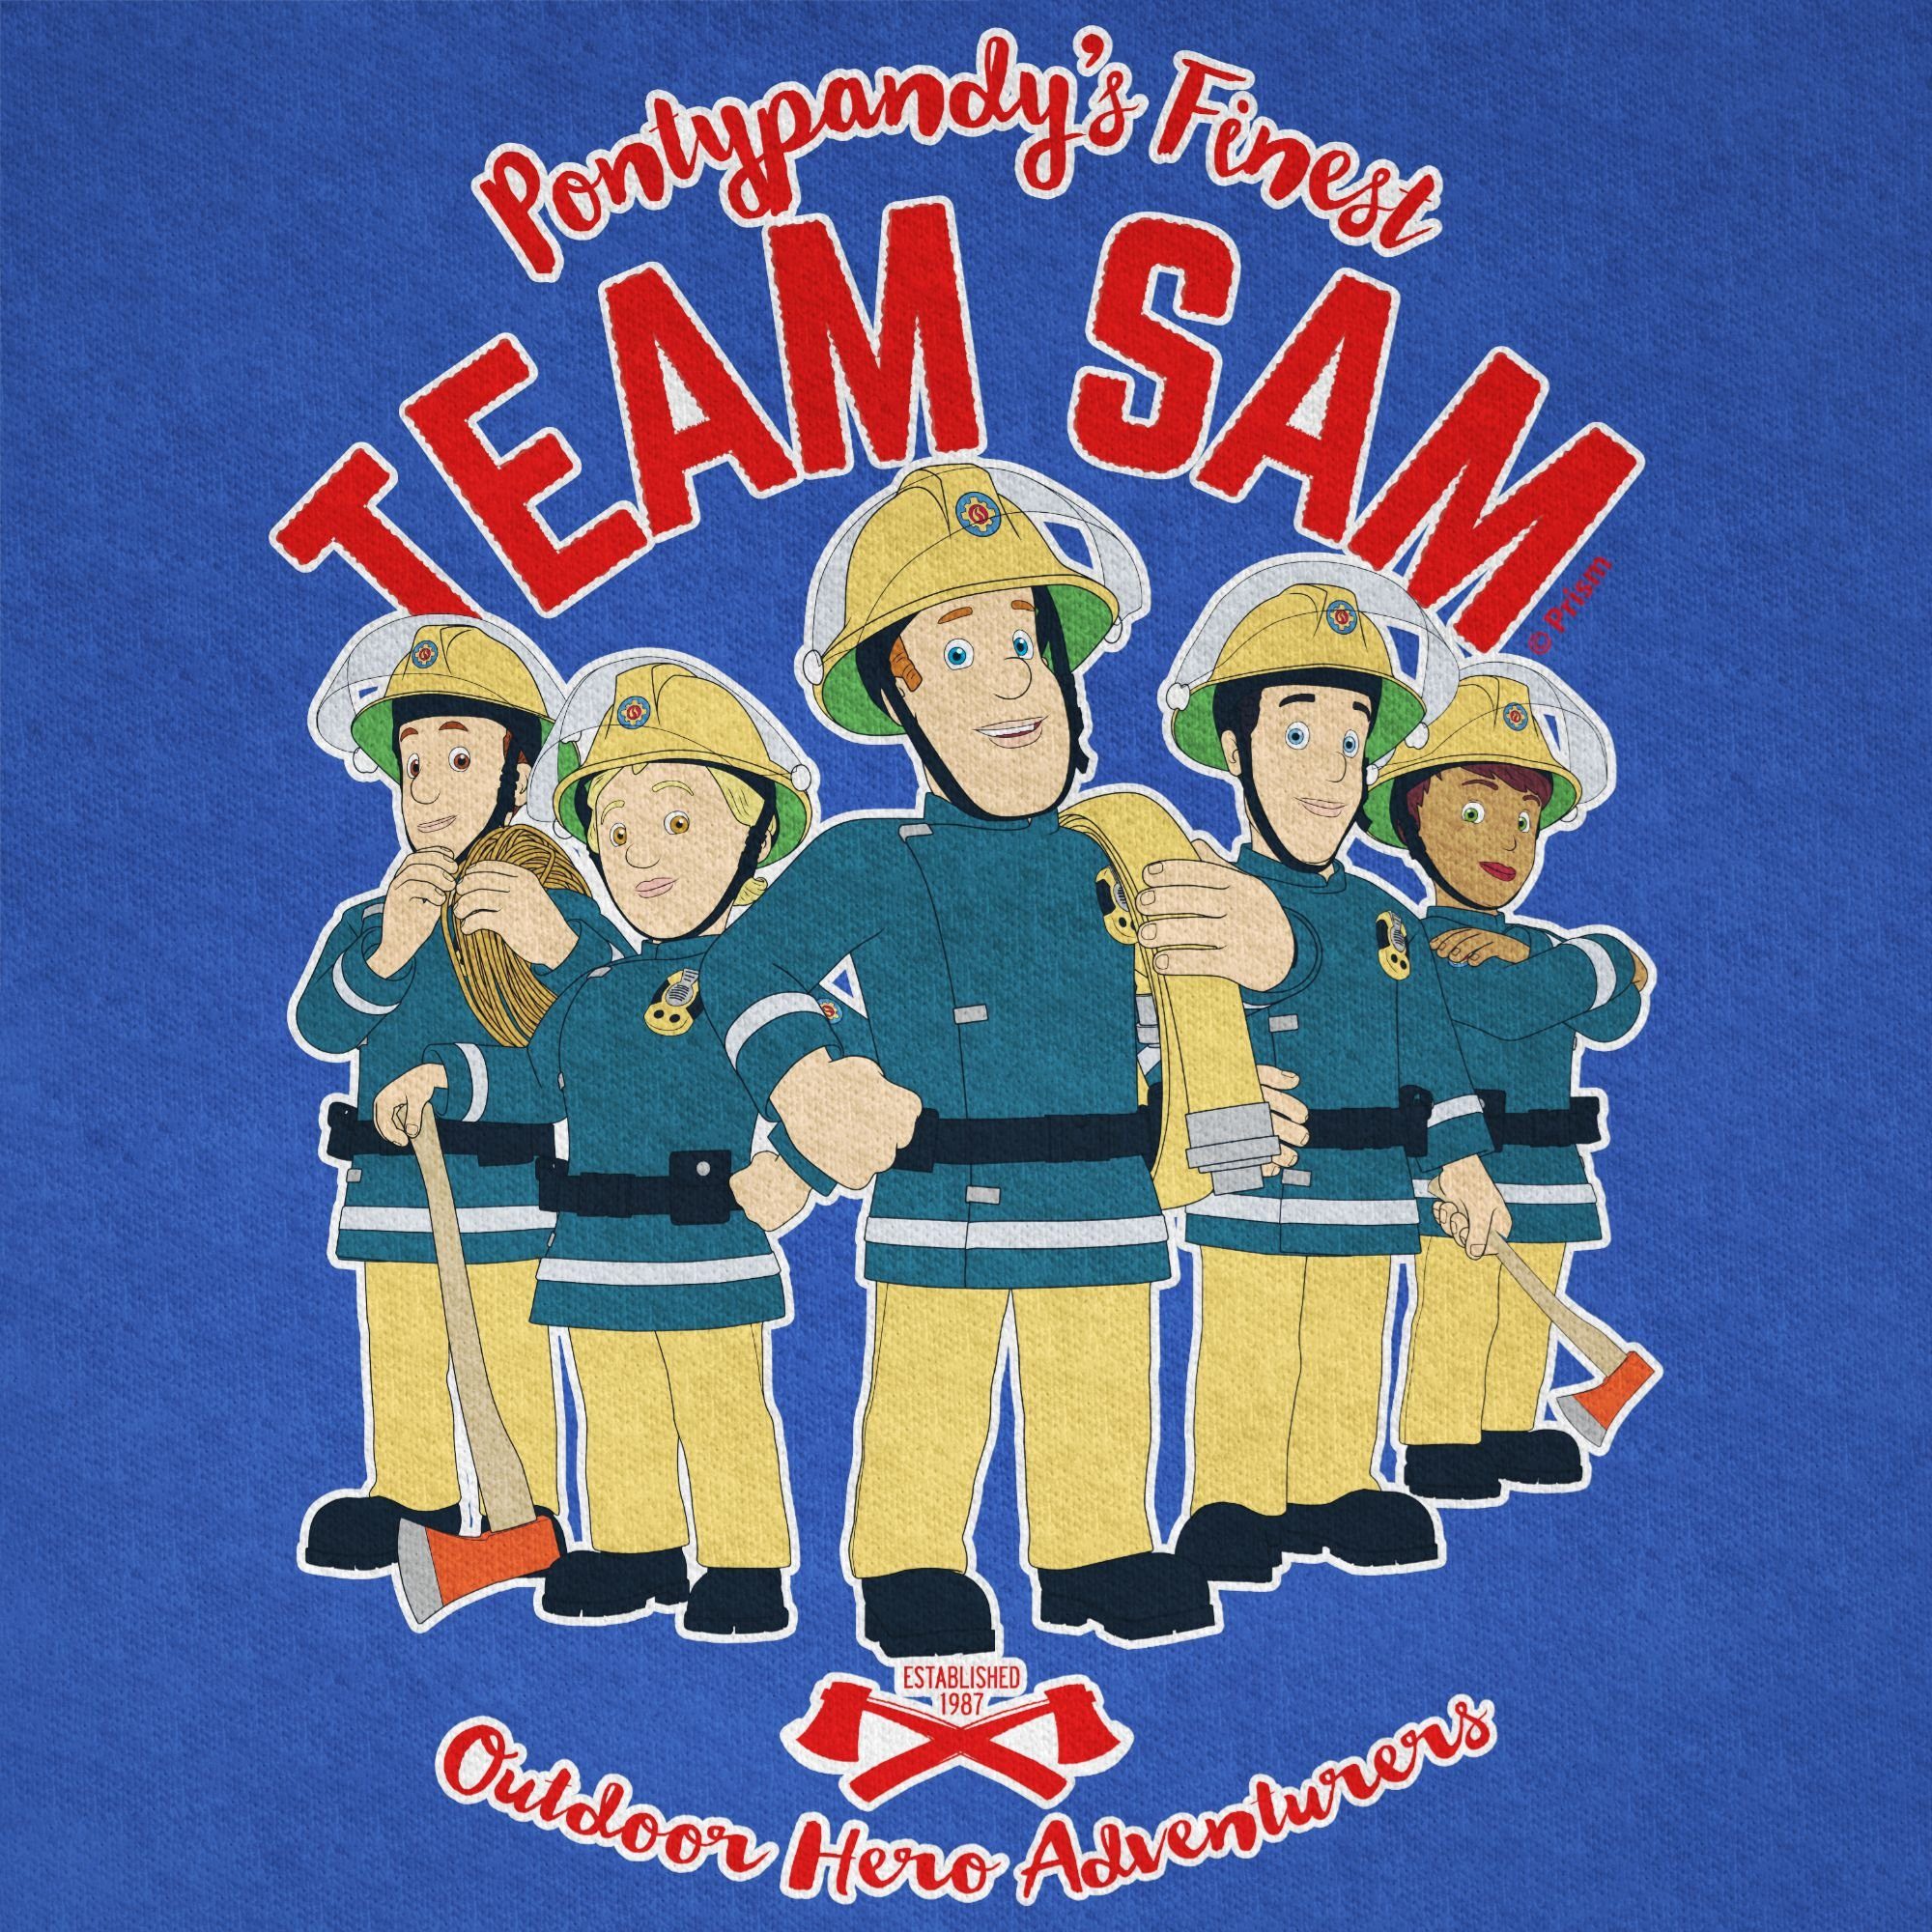 Kinder Kids (Gr. 92 - 146) Shirtracer T-Shirt Team Sam - Feuerwehrmann Sam Jungen - Jungen Kinder T-Shirt